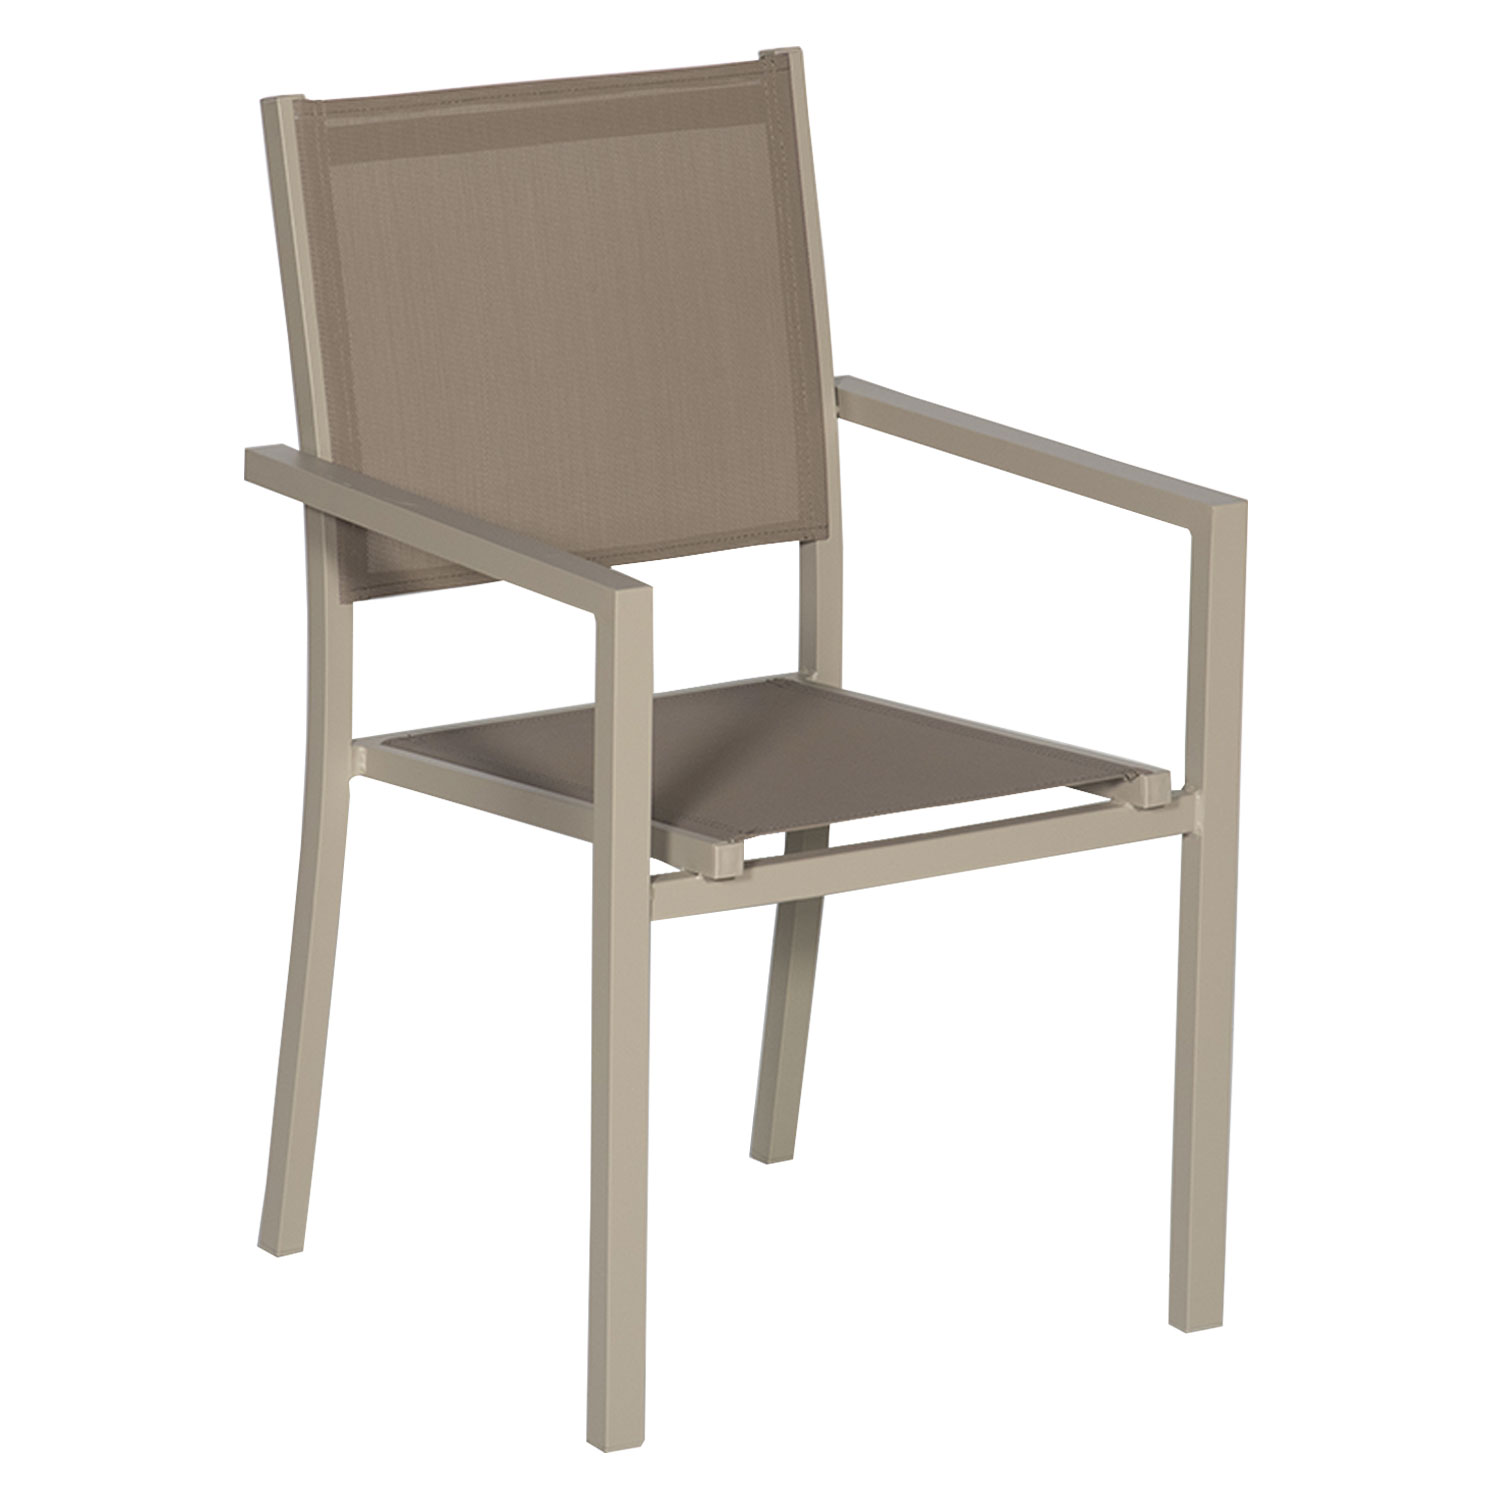 Lote de 10 sillas de aluminio color topo - Textileno topo